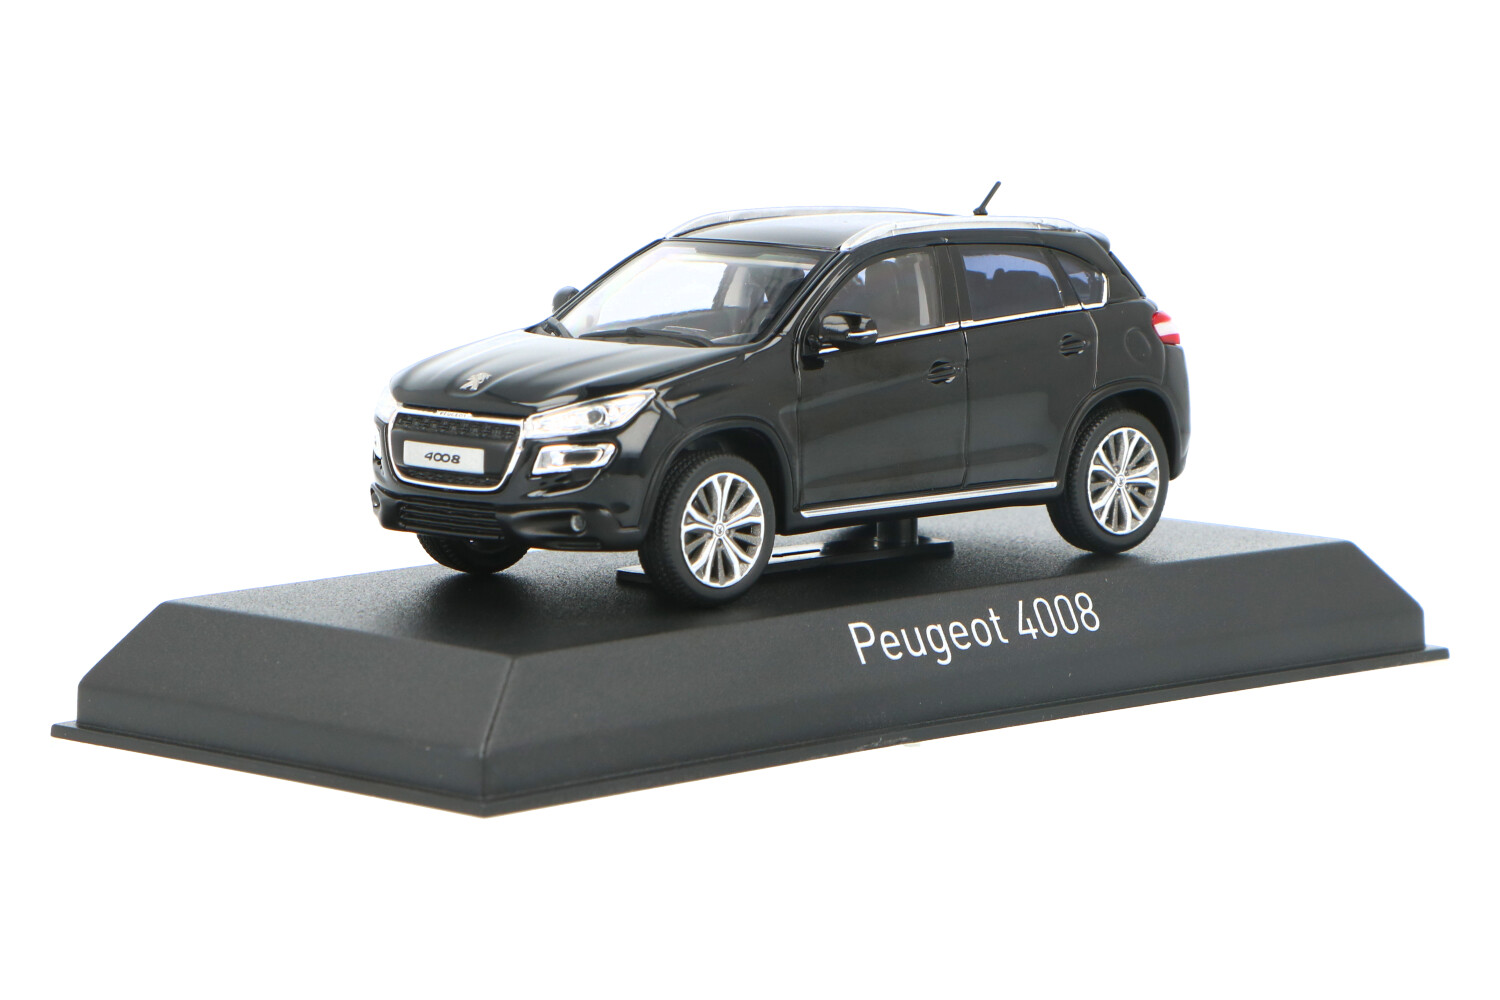 Peugeot-4008-474802_13153551094748028Peugeot-4008-474802_Houseofmodelcars_.jpg